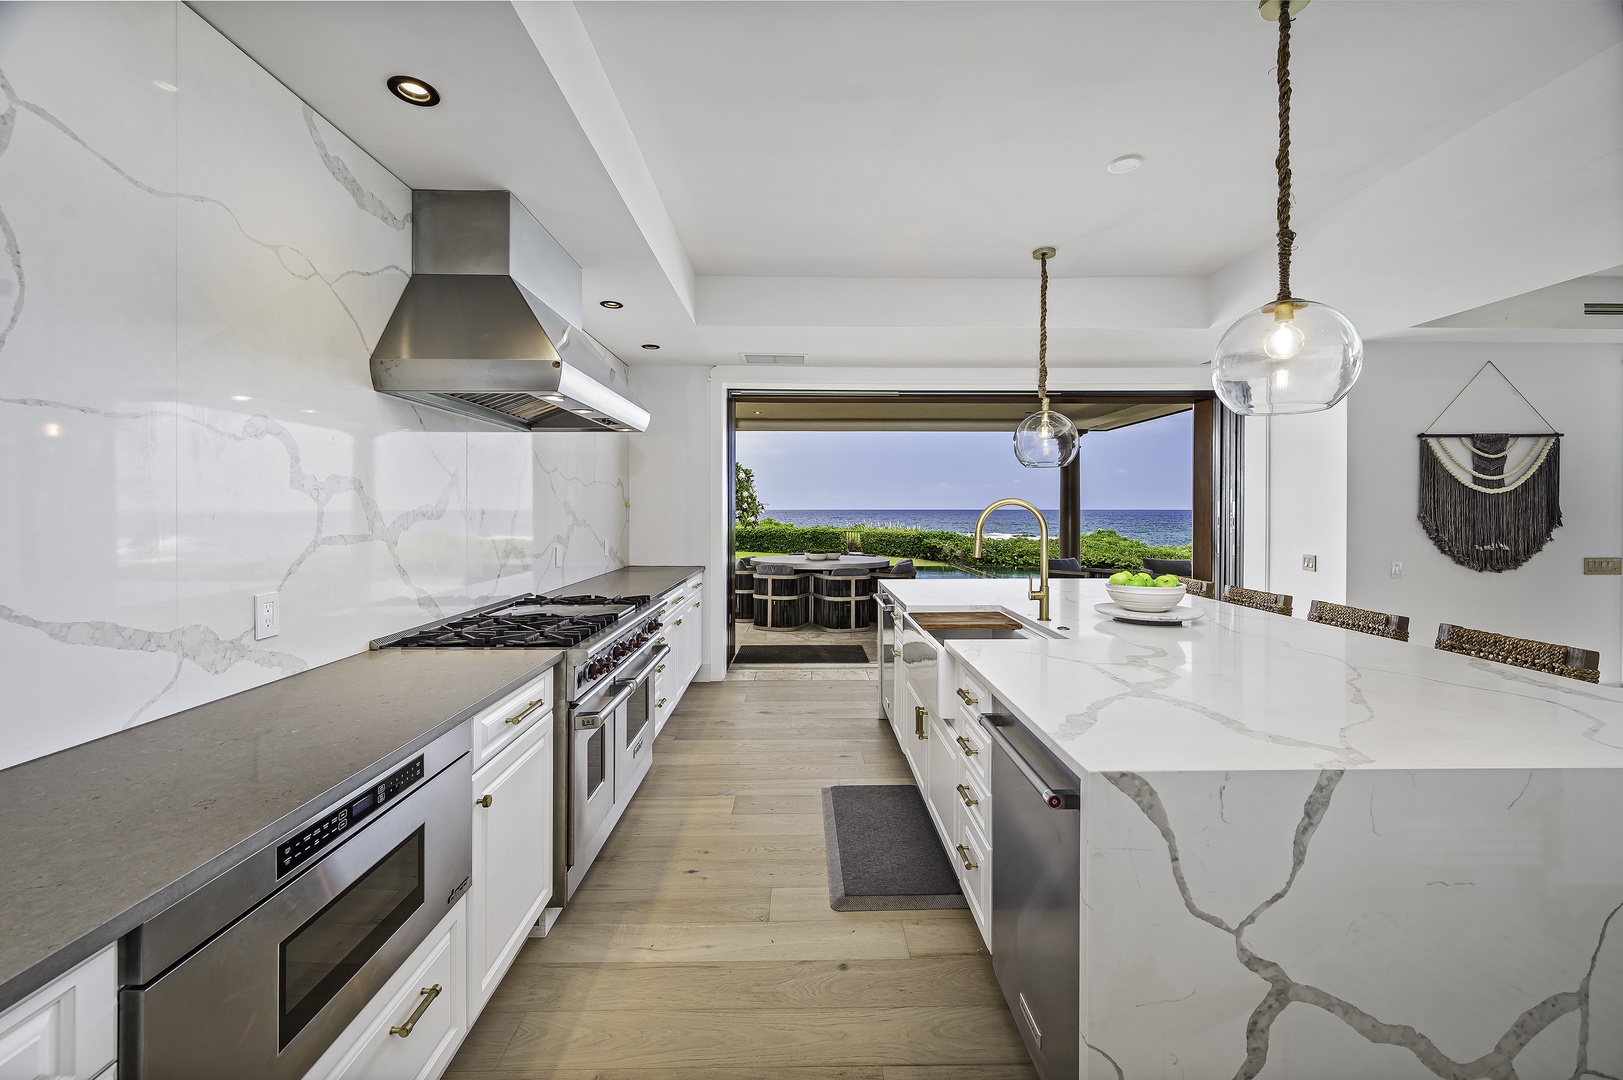 Kailua Kona Vacation Rentals, Alohi Kai Estate** - Detached pantry kitchen perfect for chefs.